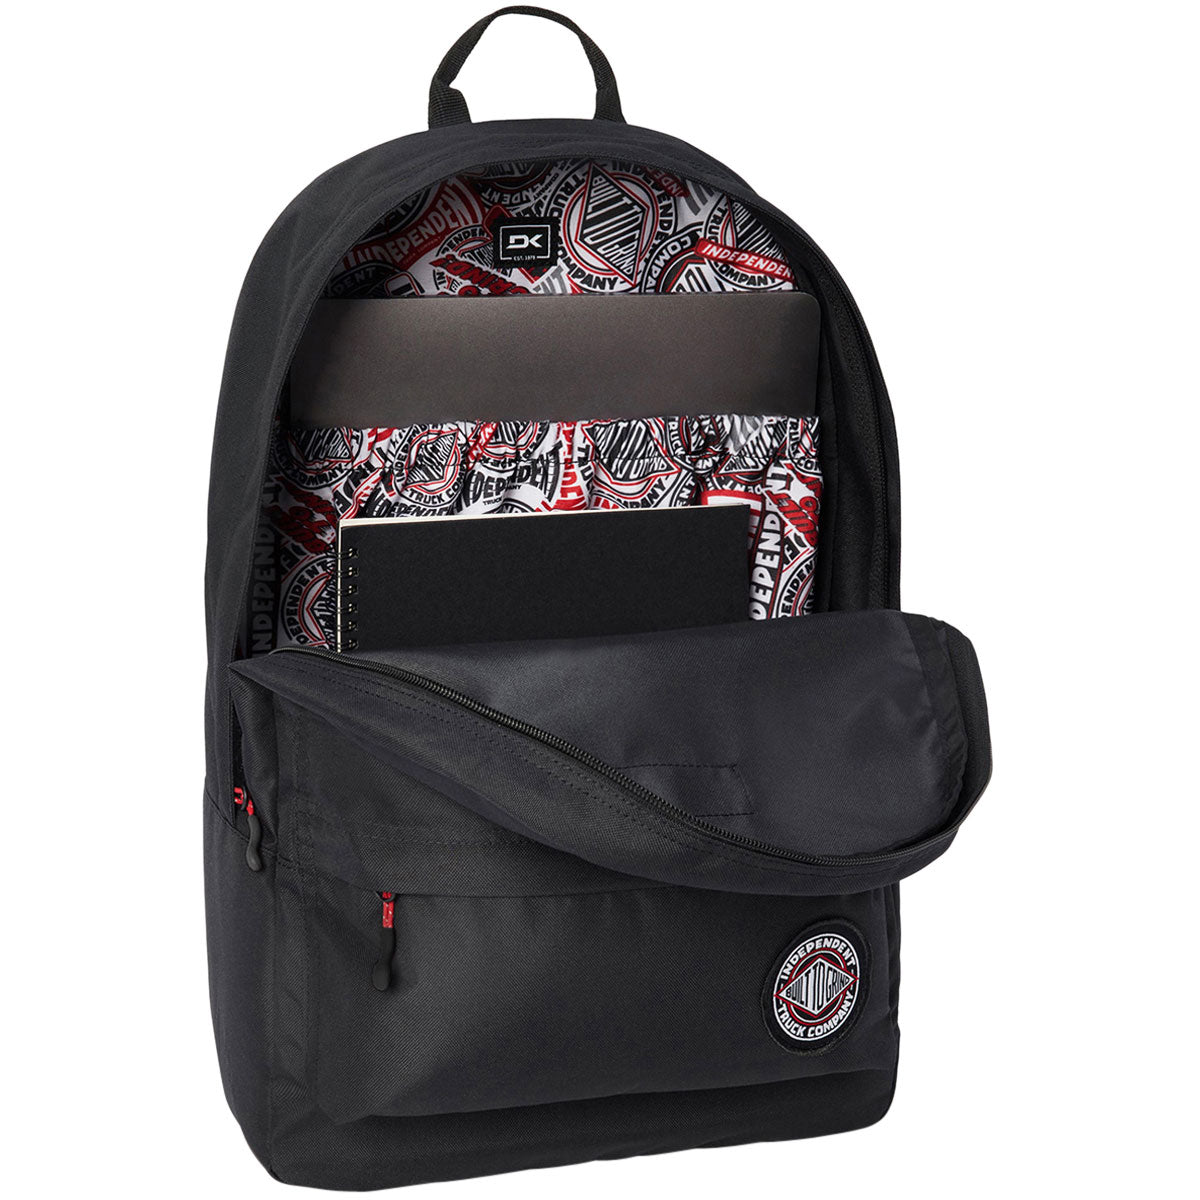 Dakine x Independent 365 Pack 21L Backpack - Black image 2